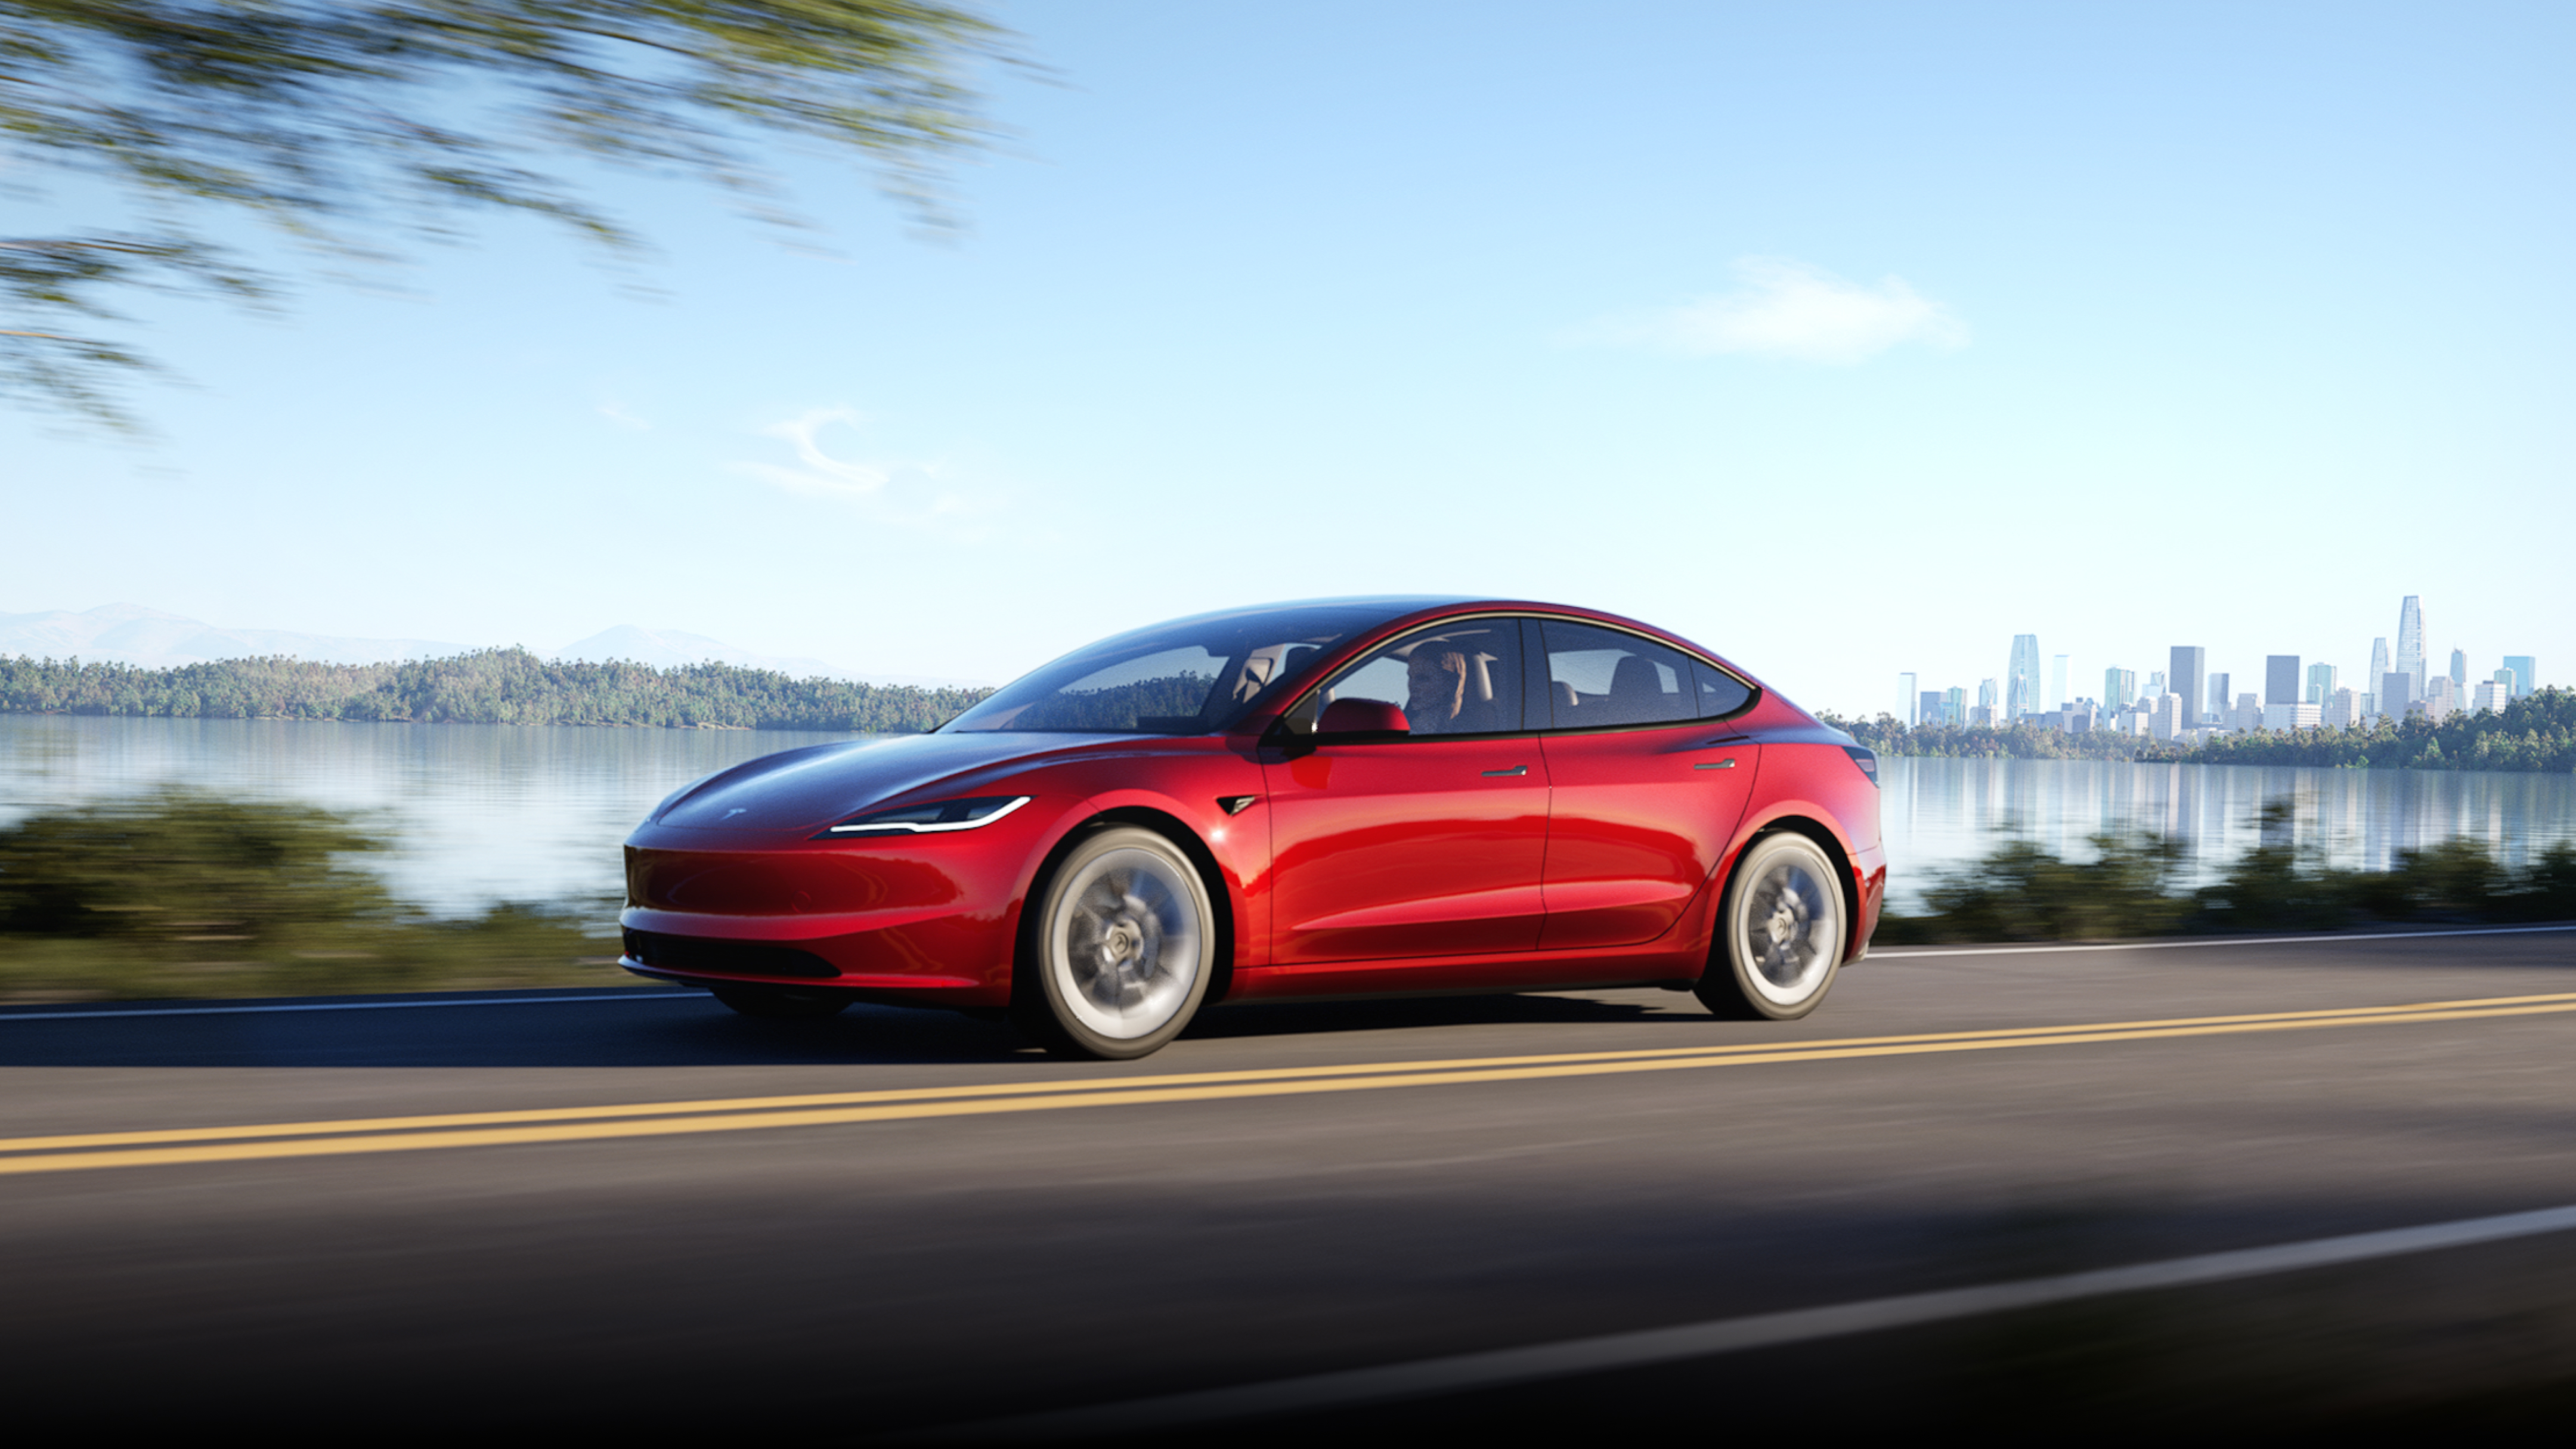 سيارة Model 3 بلون أحمر Ultra تتجول على الطريق مع ظهور منظر للمدينة في الخلفية.